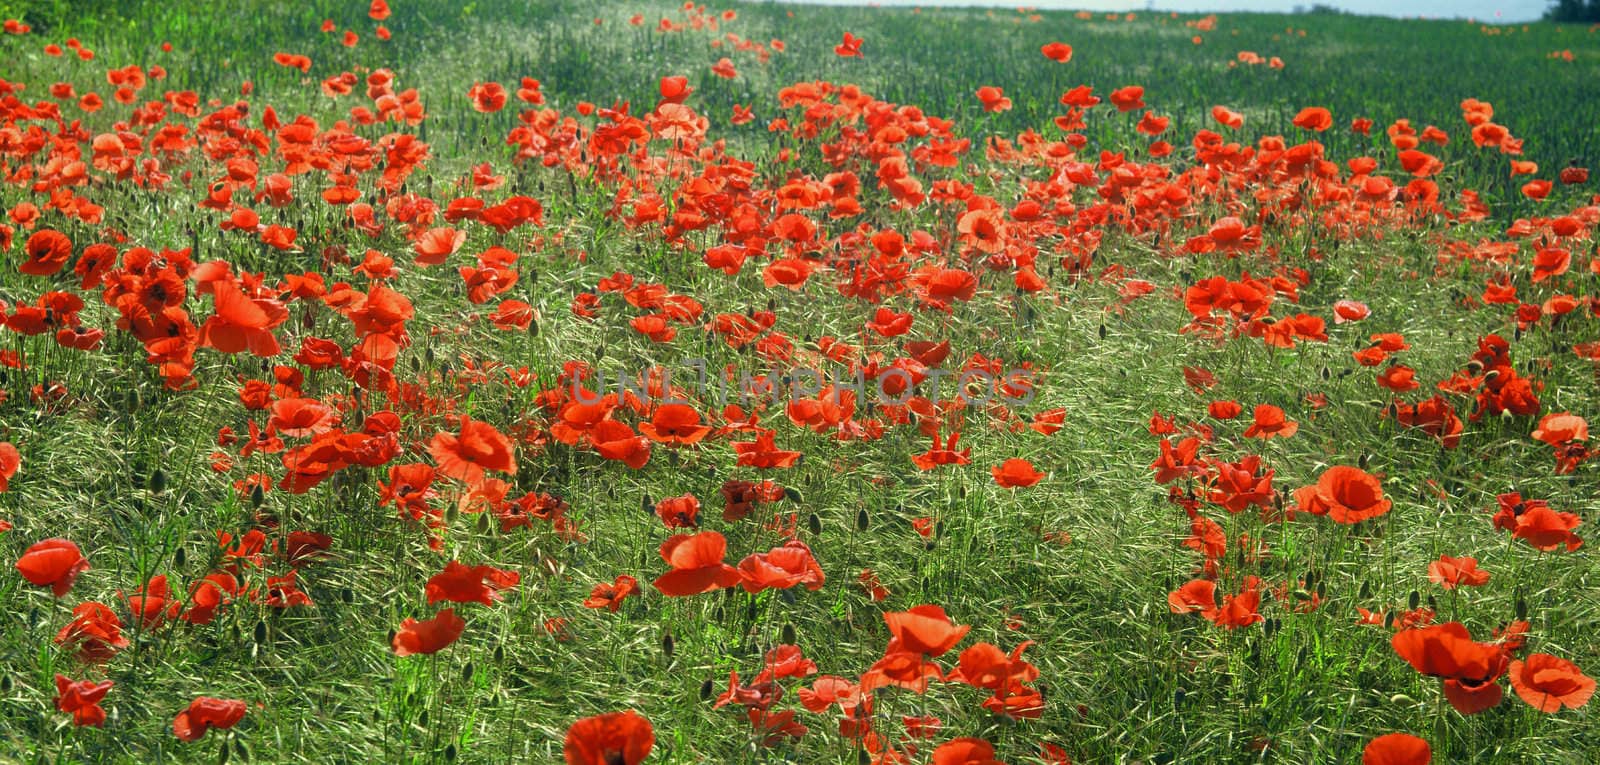 field full of red poppy flowers